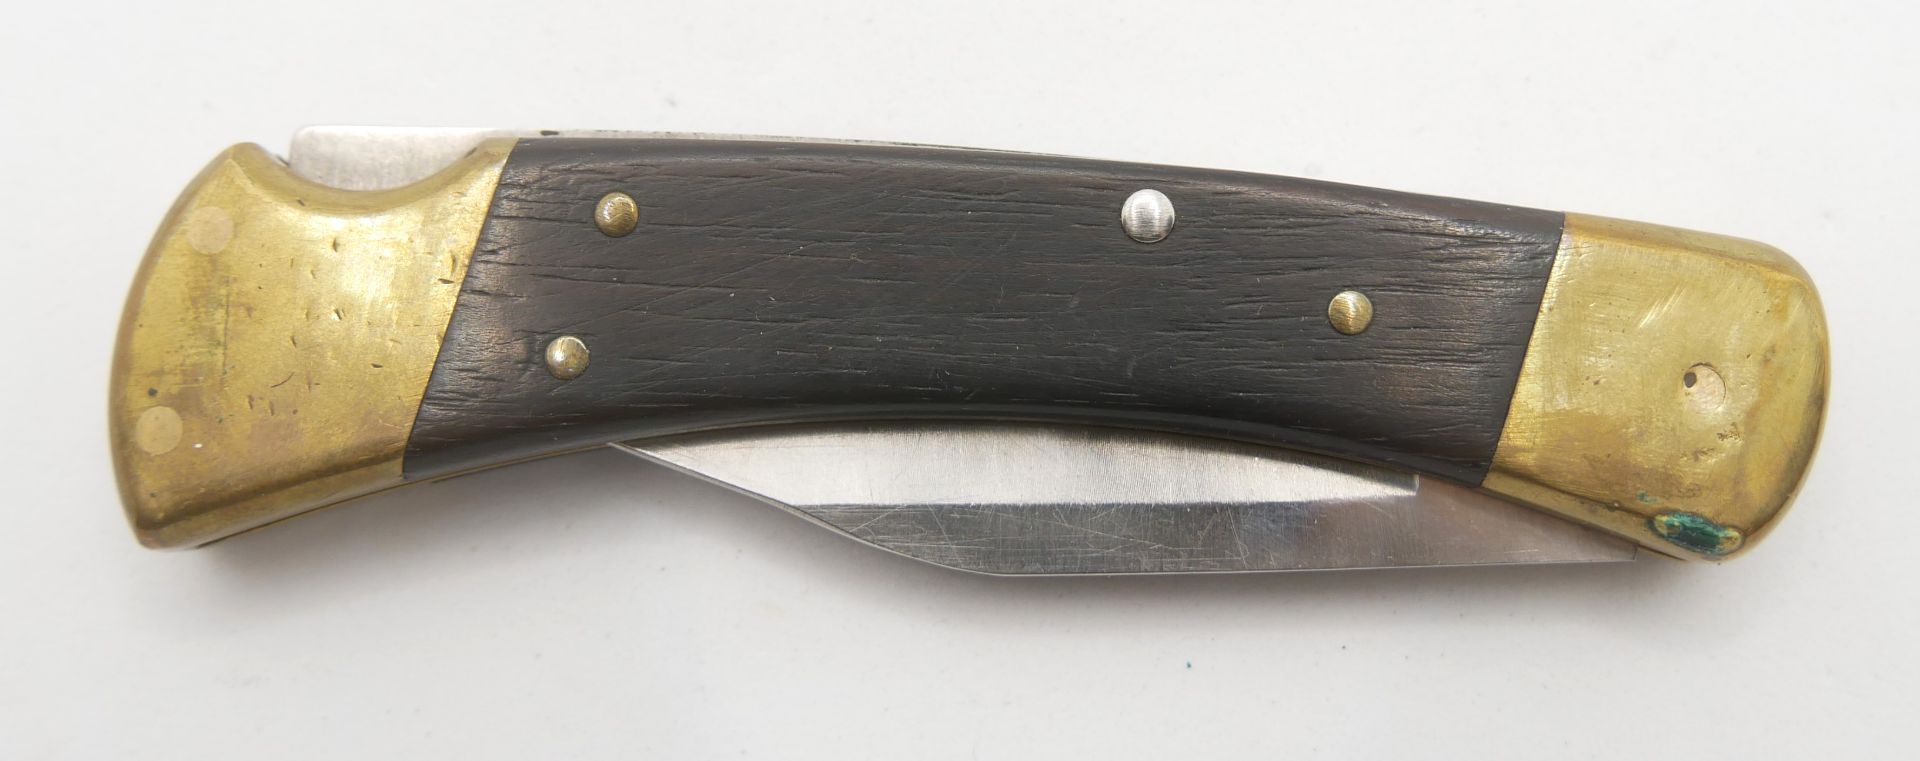 Taschenmesser BUCK 110 Folding Hunter mit Fingermulden, guter gebrauchter Zustand.